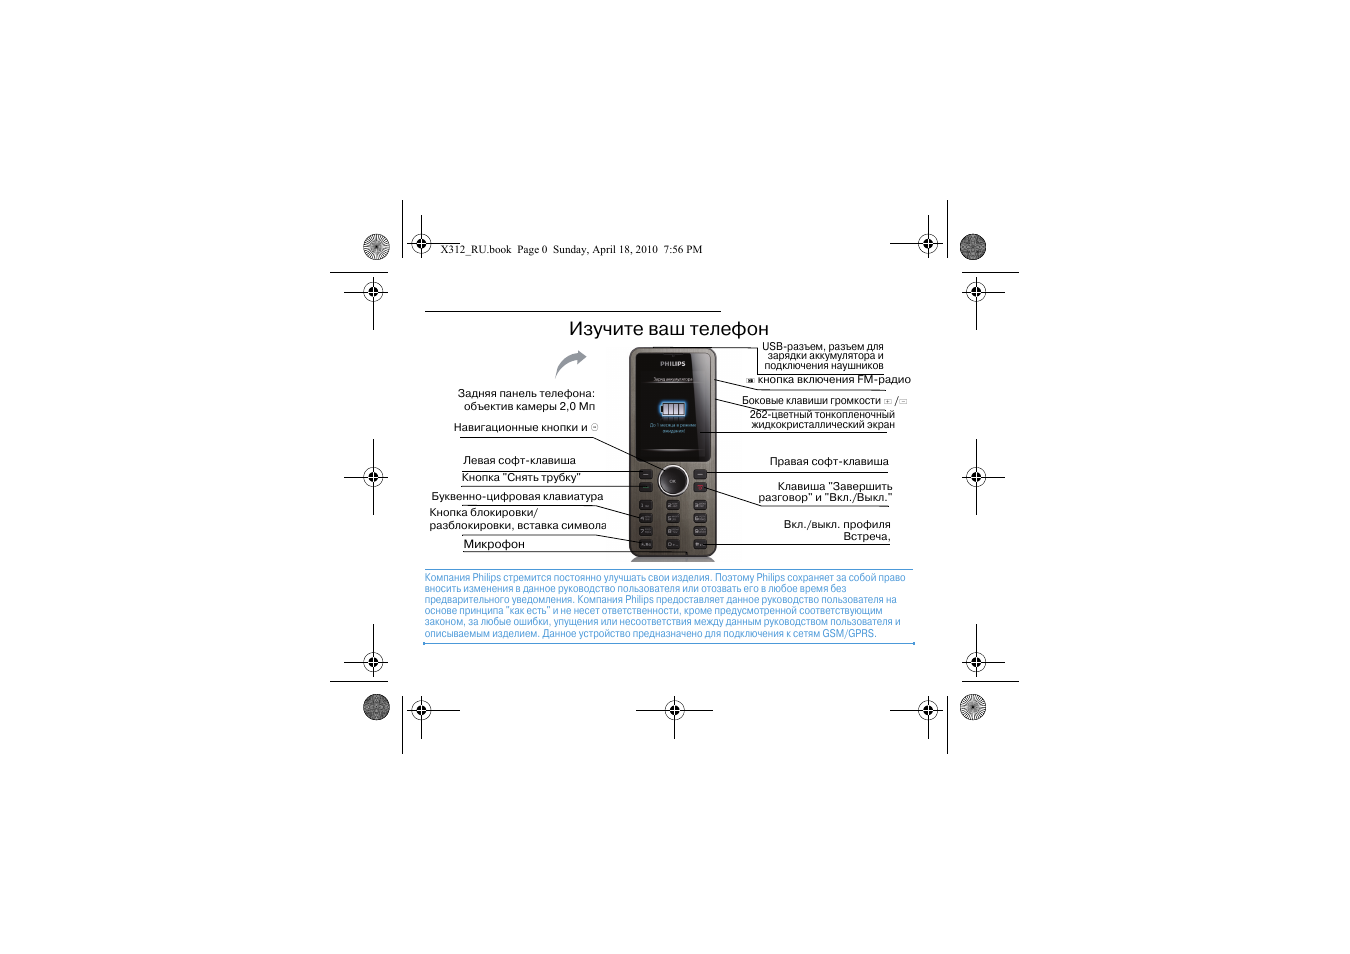 Телефон philips xenium инструкция. Кнопочный телефон Филипс Xenium инструкция пользования. Инструкция по эксплуатации кнопочного телефона Филипс Xenium. Philips Xenium x312. Инструкция к телефону Филипс кнопочный Xenium.